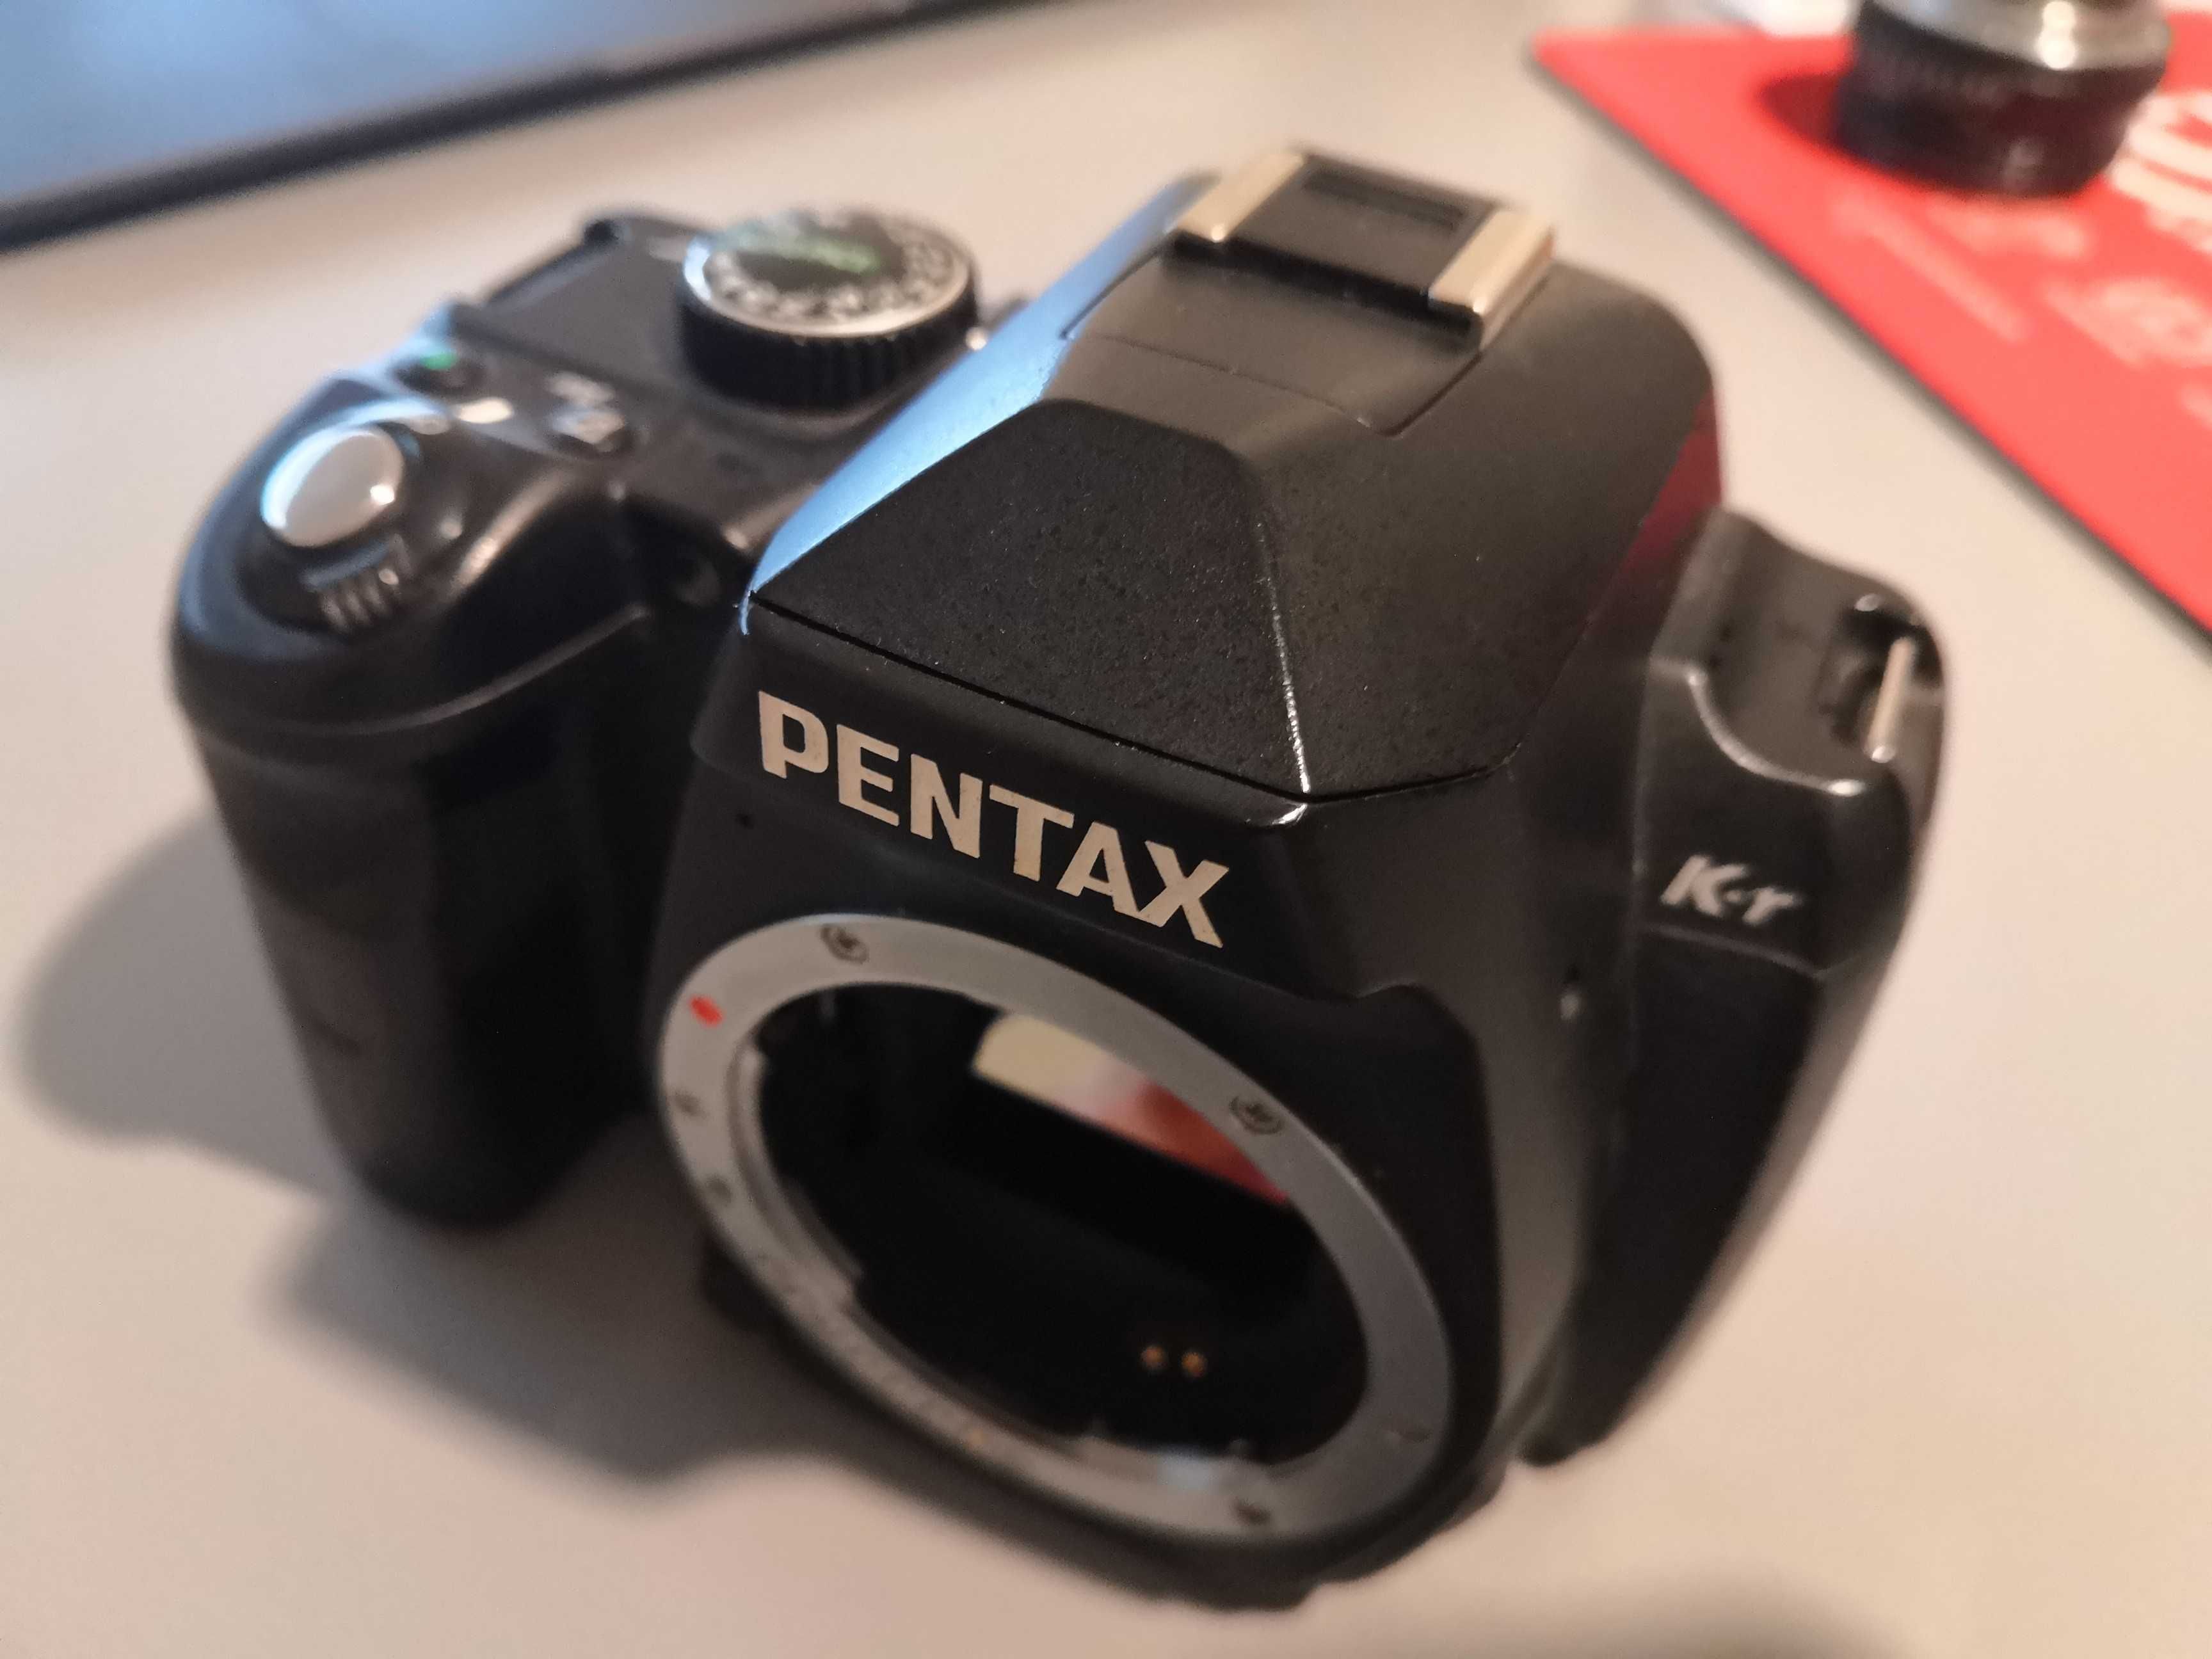 Pentax K-r Trzy obiektywy - 50, 18-55, 50-200mm